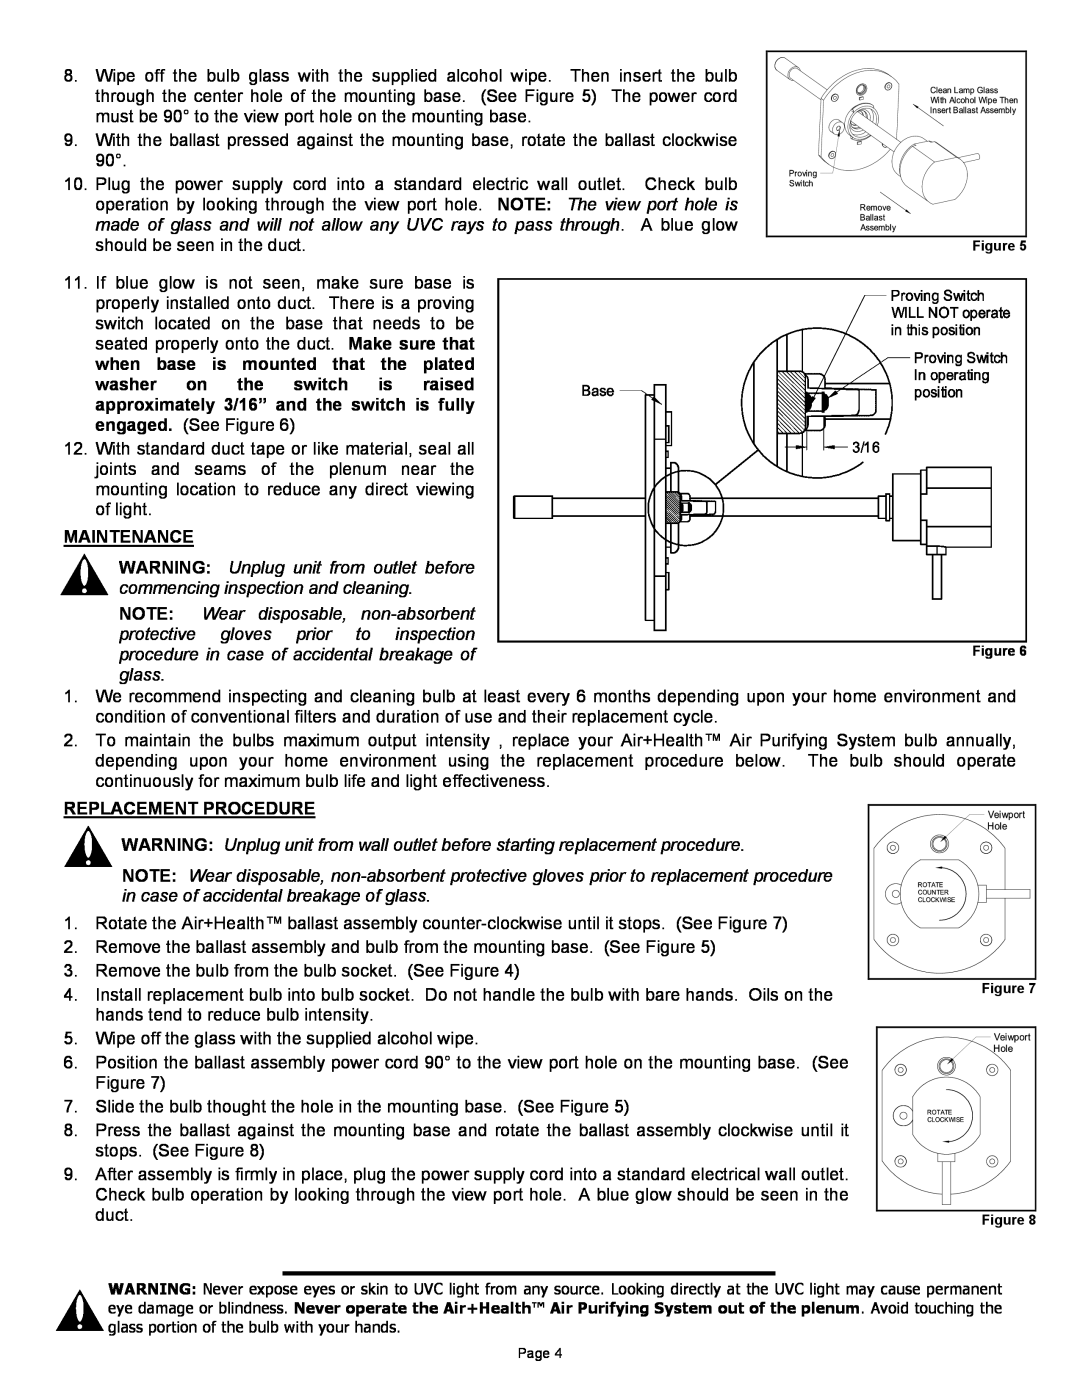 Air Health AH-RL, AH-1 instruction sheet Maintenance, Replacement Procedure, Figure Figure 